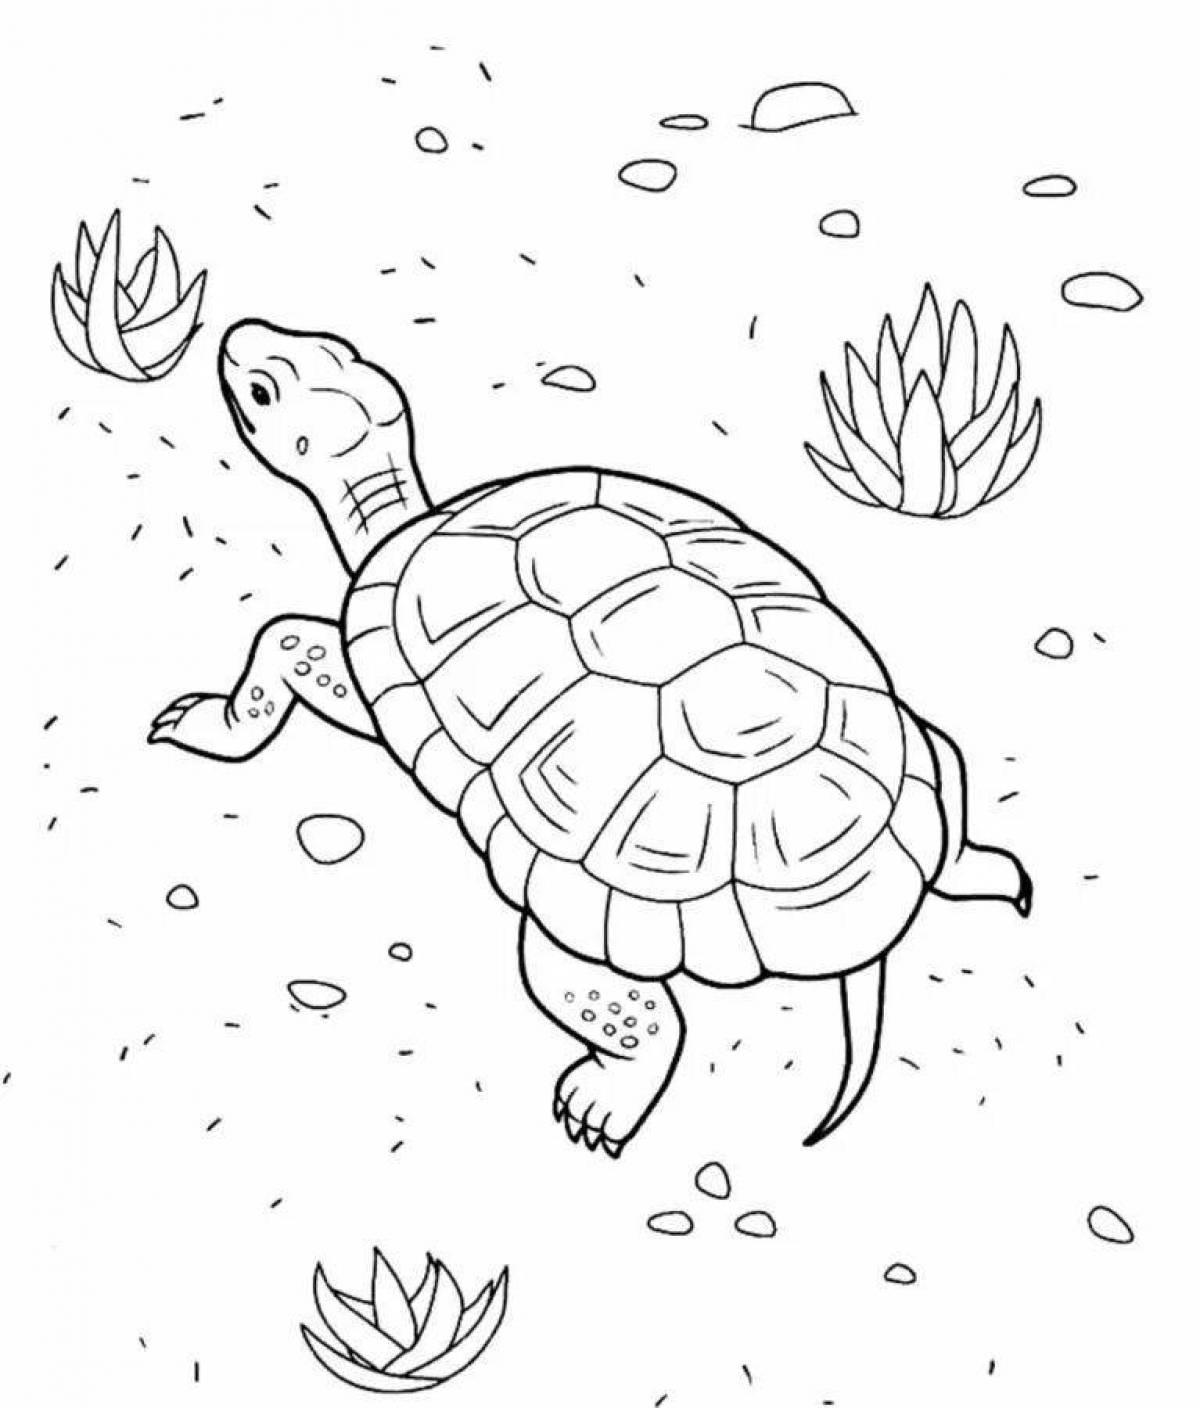 Impressive turtle coloring book